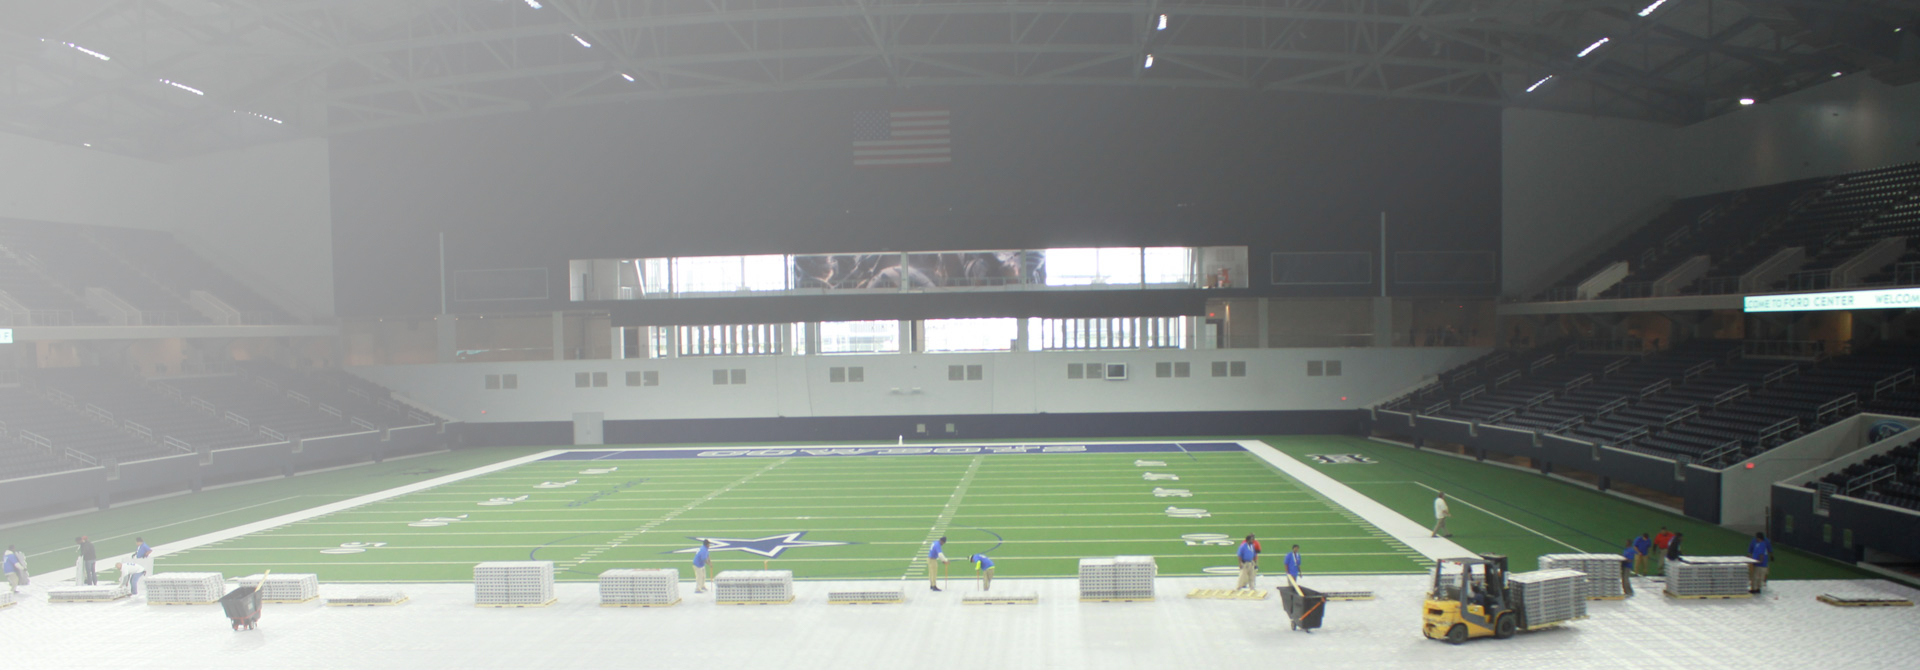 Dallas Cowboys practice field